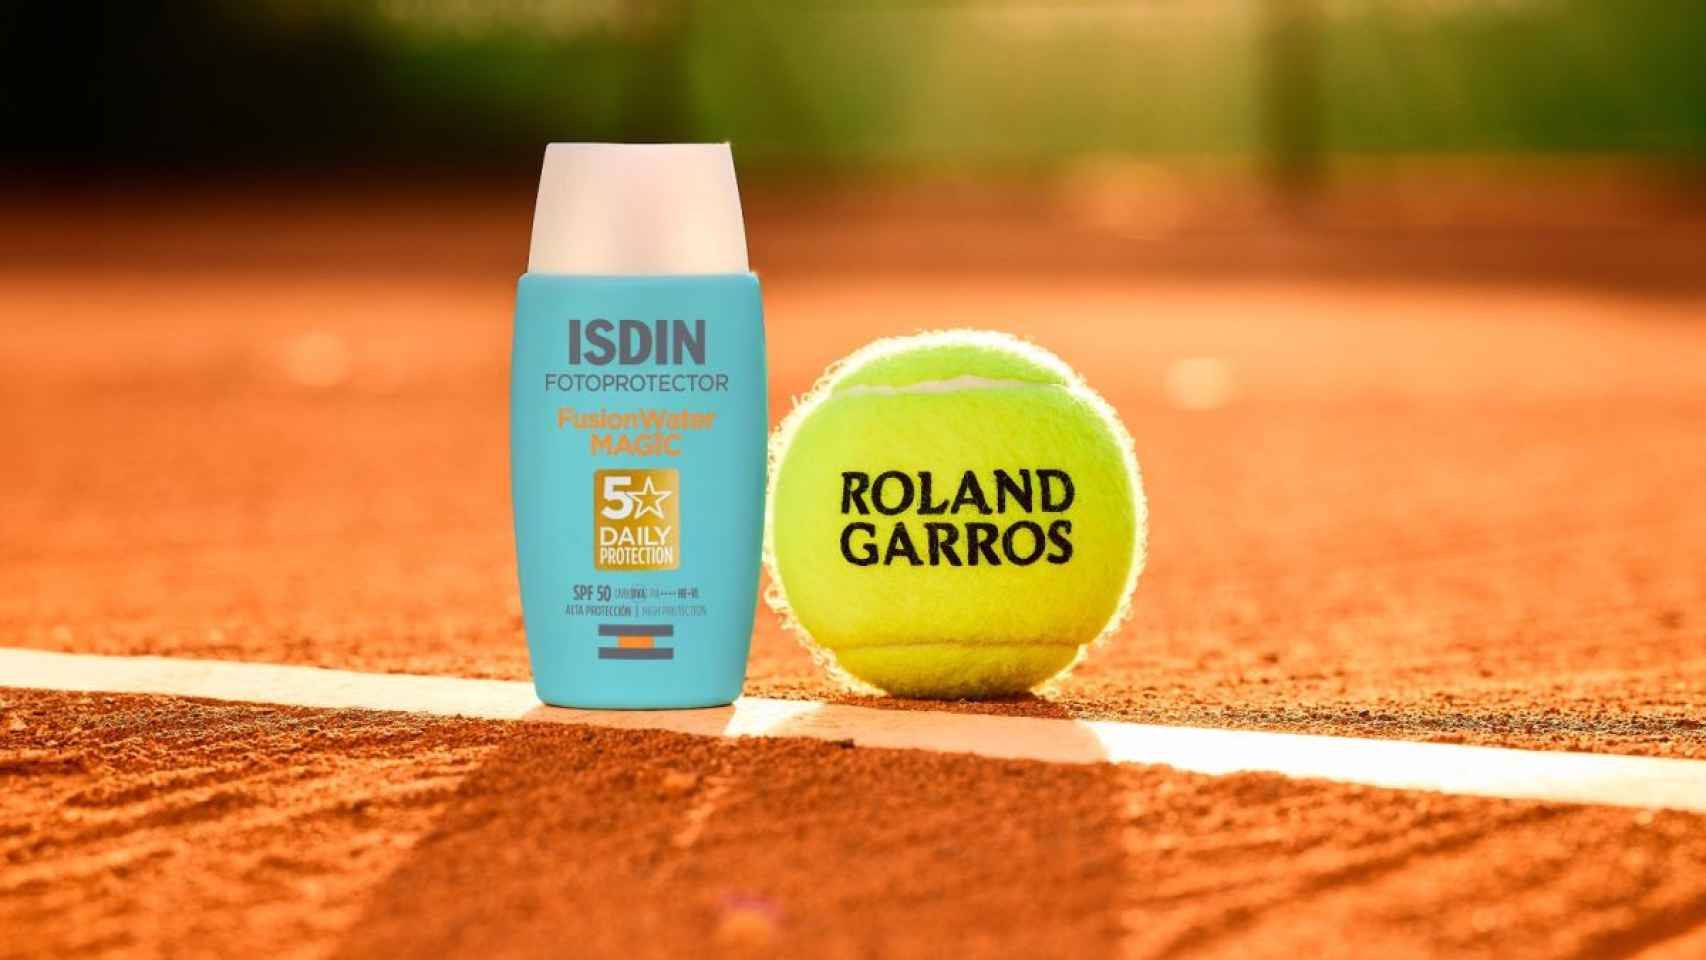 Roland Garros ha escogido a ISDIN como su fotoprotector oficial para concienciar y prevenir el cáncer de piel tanto entre los tenistas como entre los asistentes al torneo